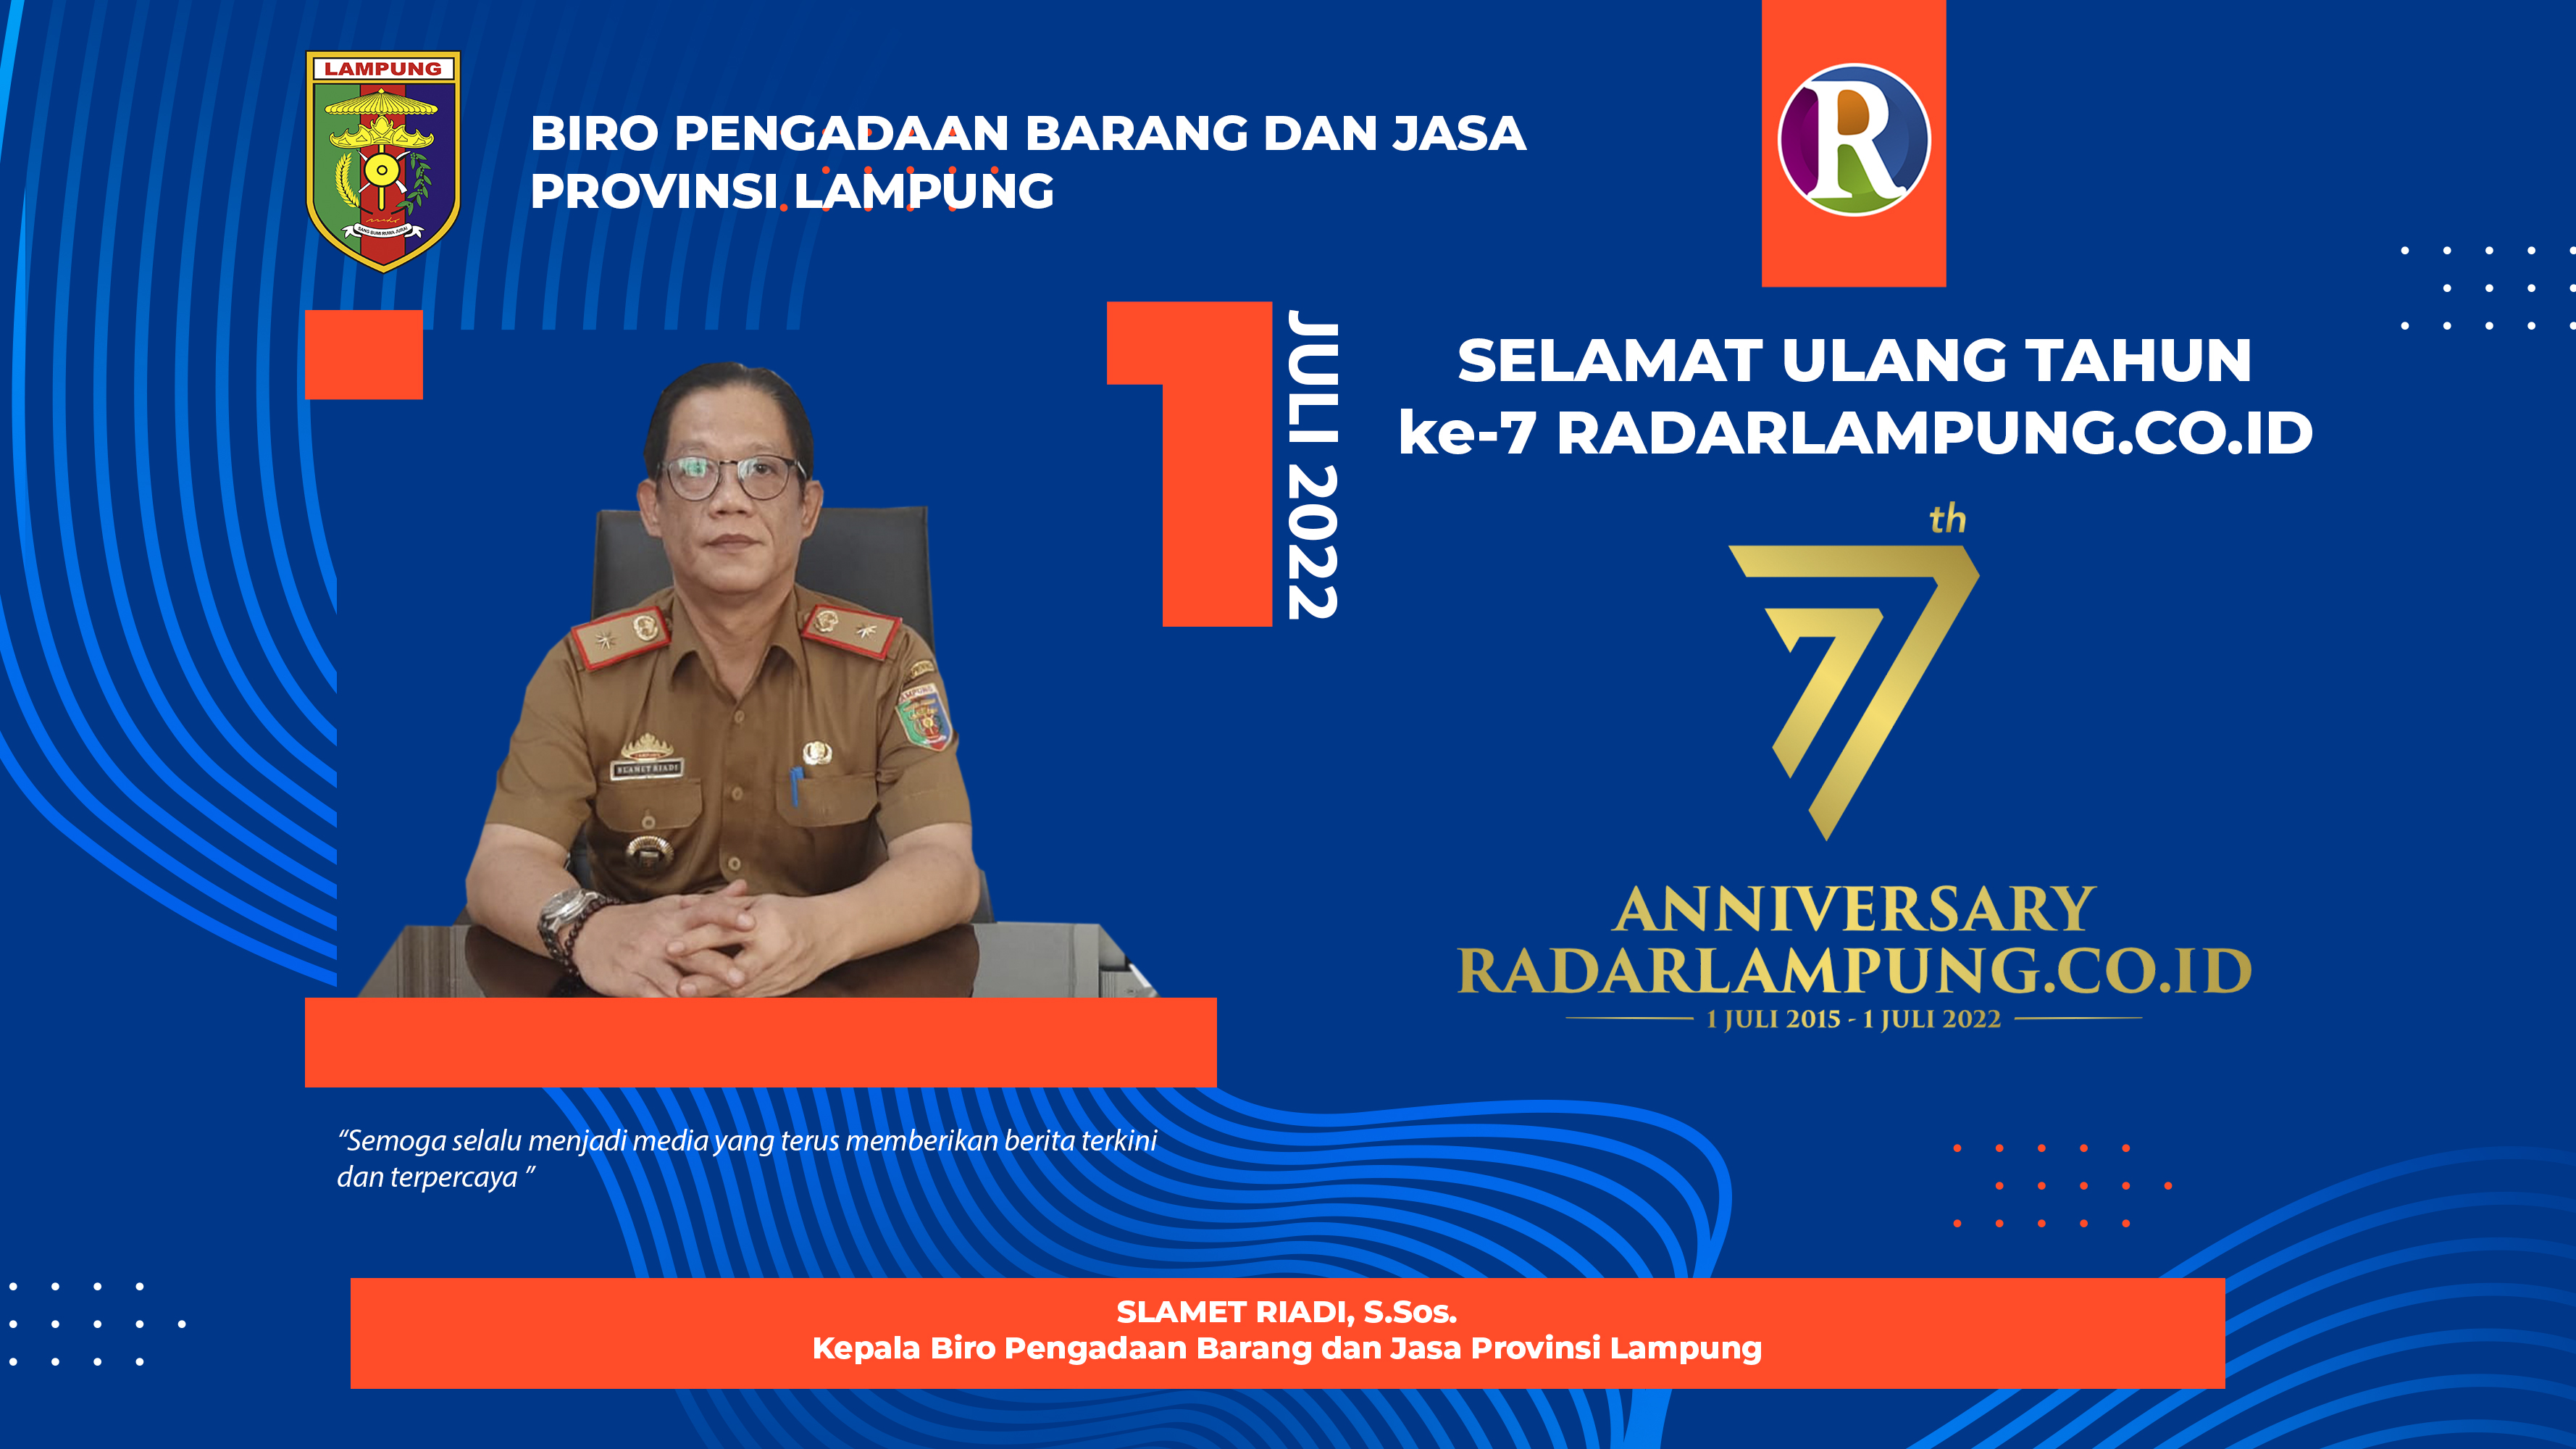 Biro Pengadaan Barang dan Jasa Provinsi Lampung: Selamat Hari Jadi ke-7 Radar Lampung Online